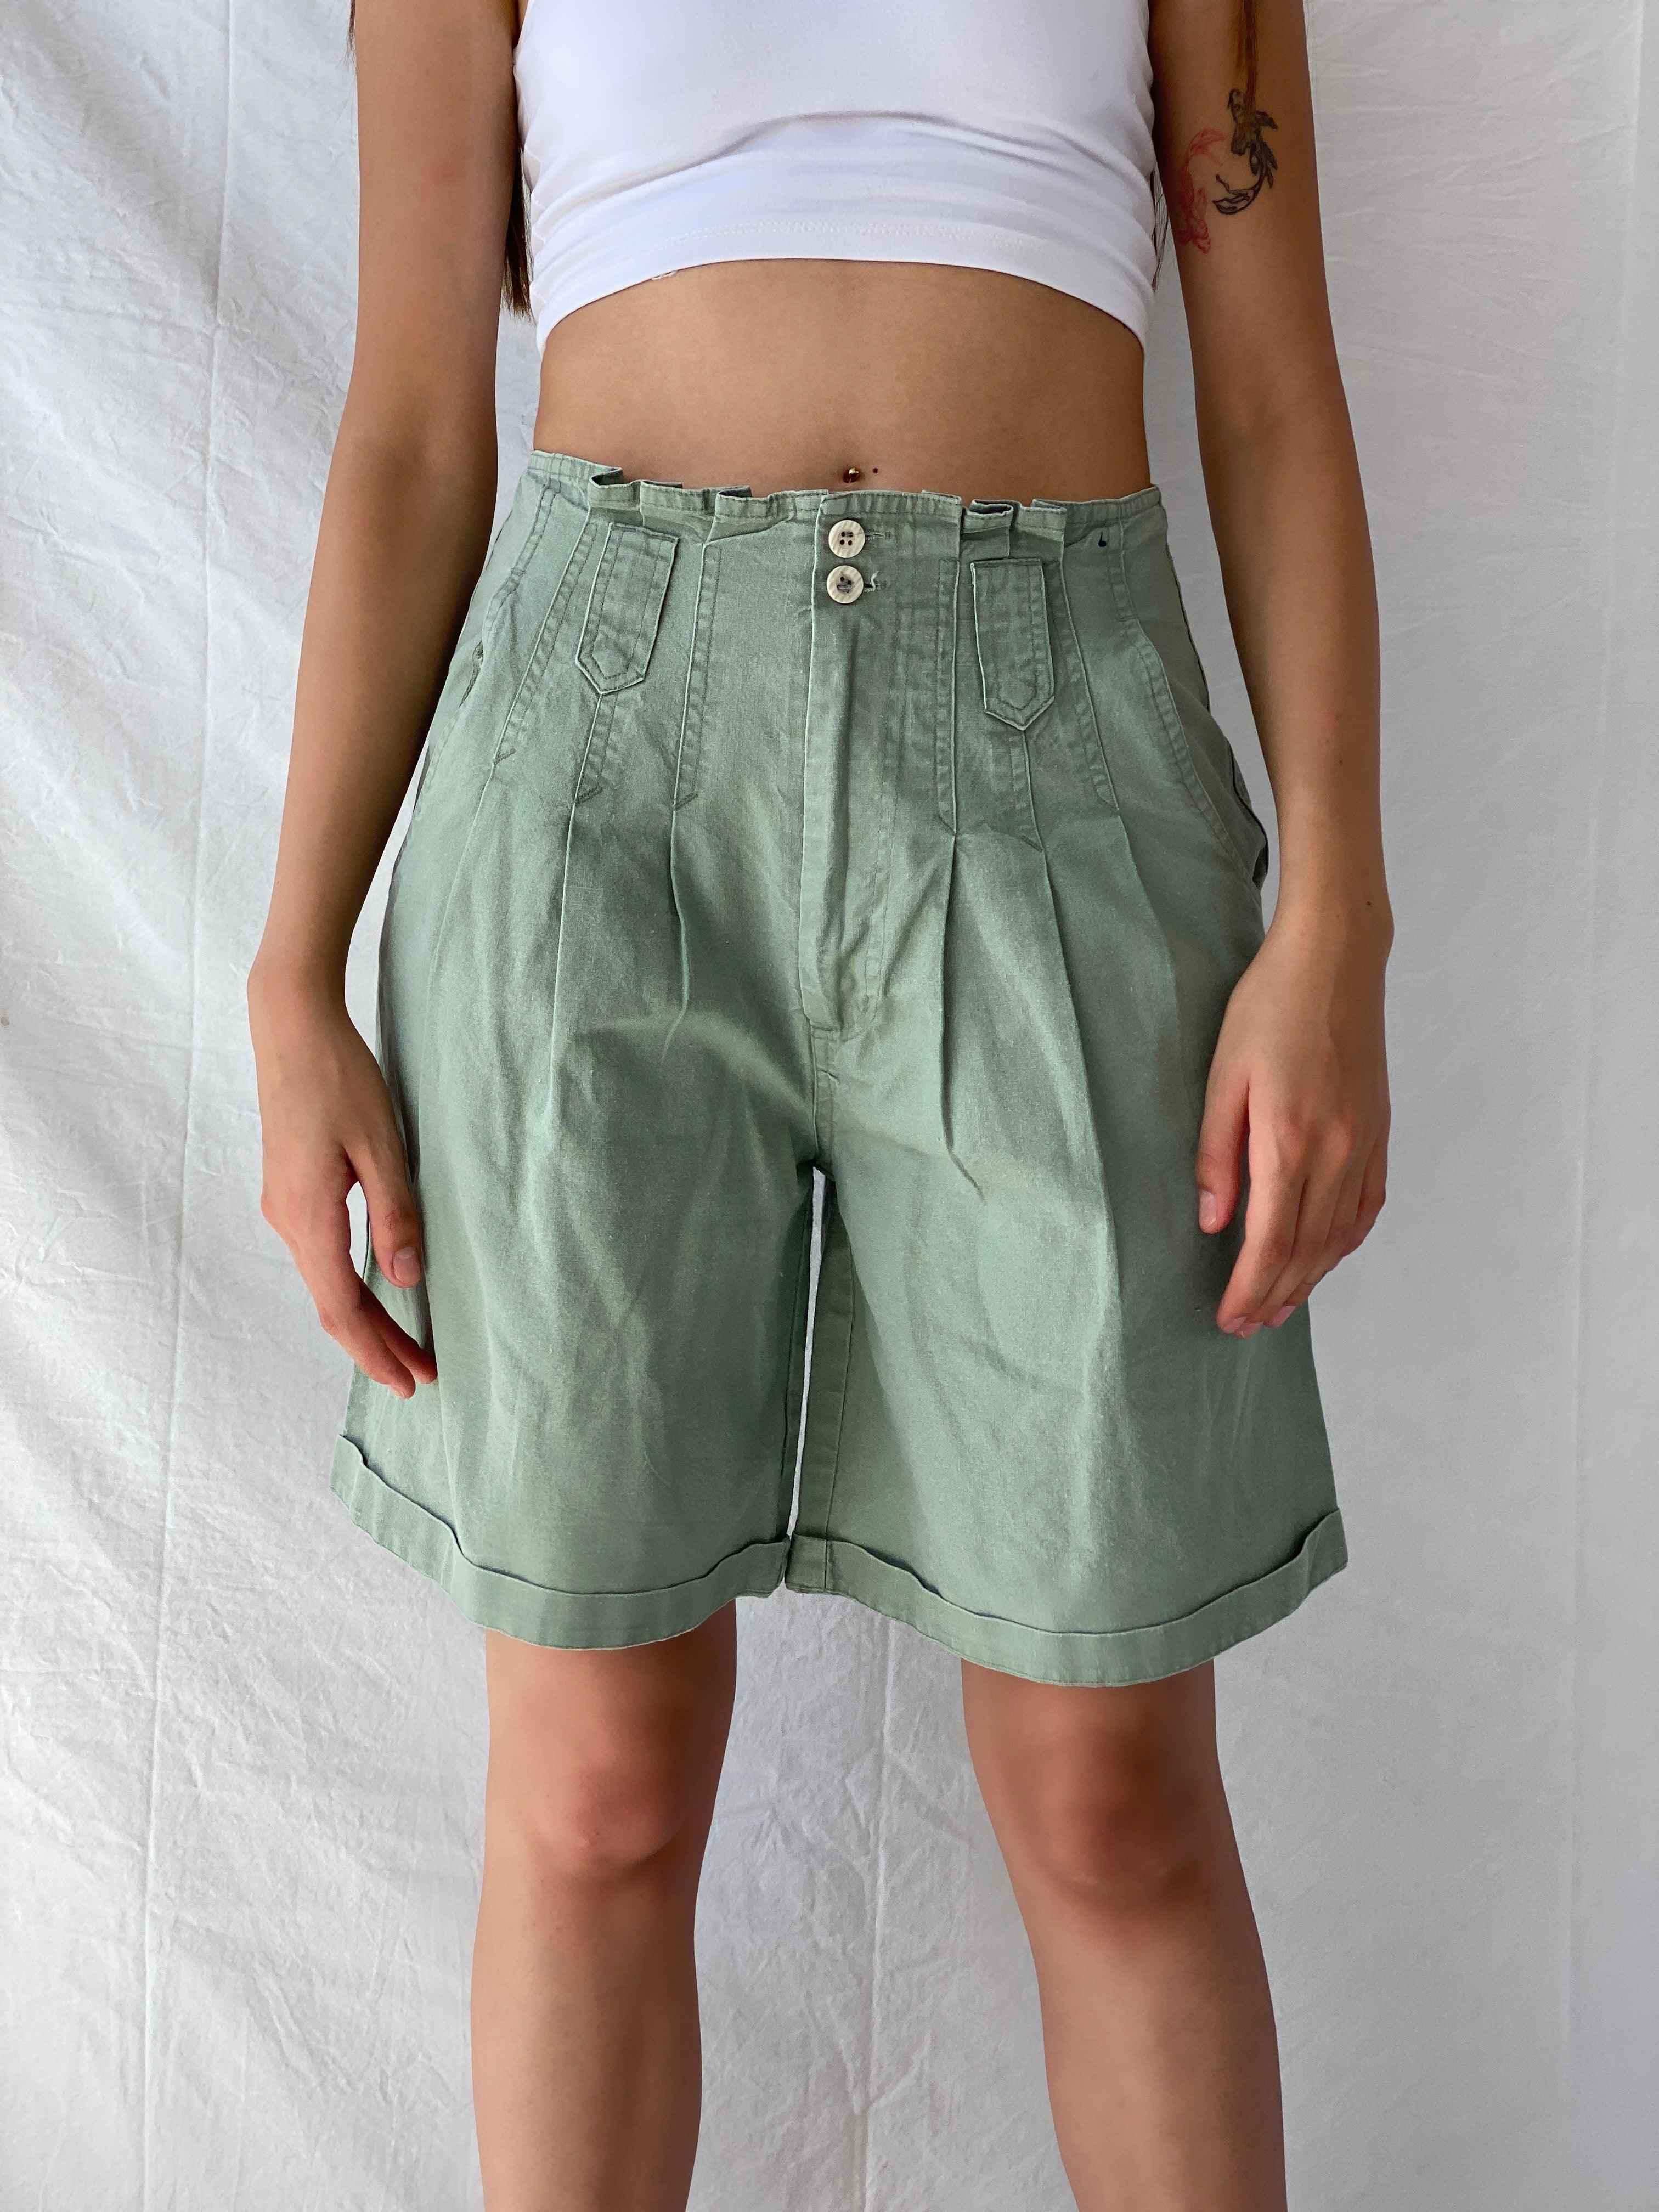 Vintage Baccini Shorts - Balagan Vintage Shorts 00s, 90s, Mira, shorts